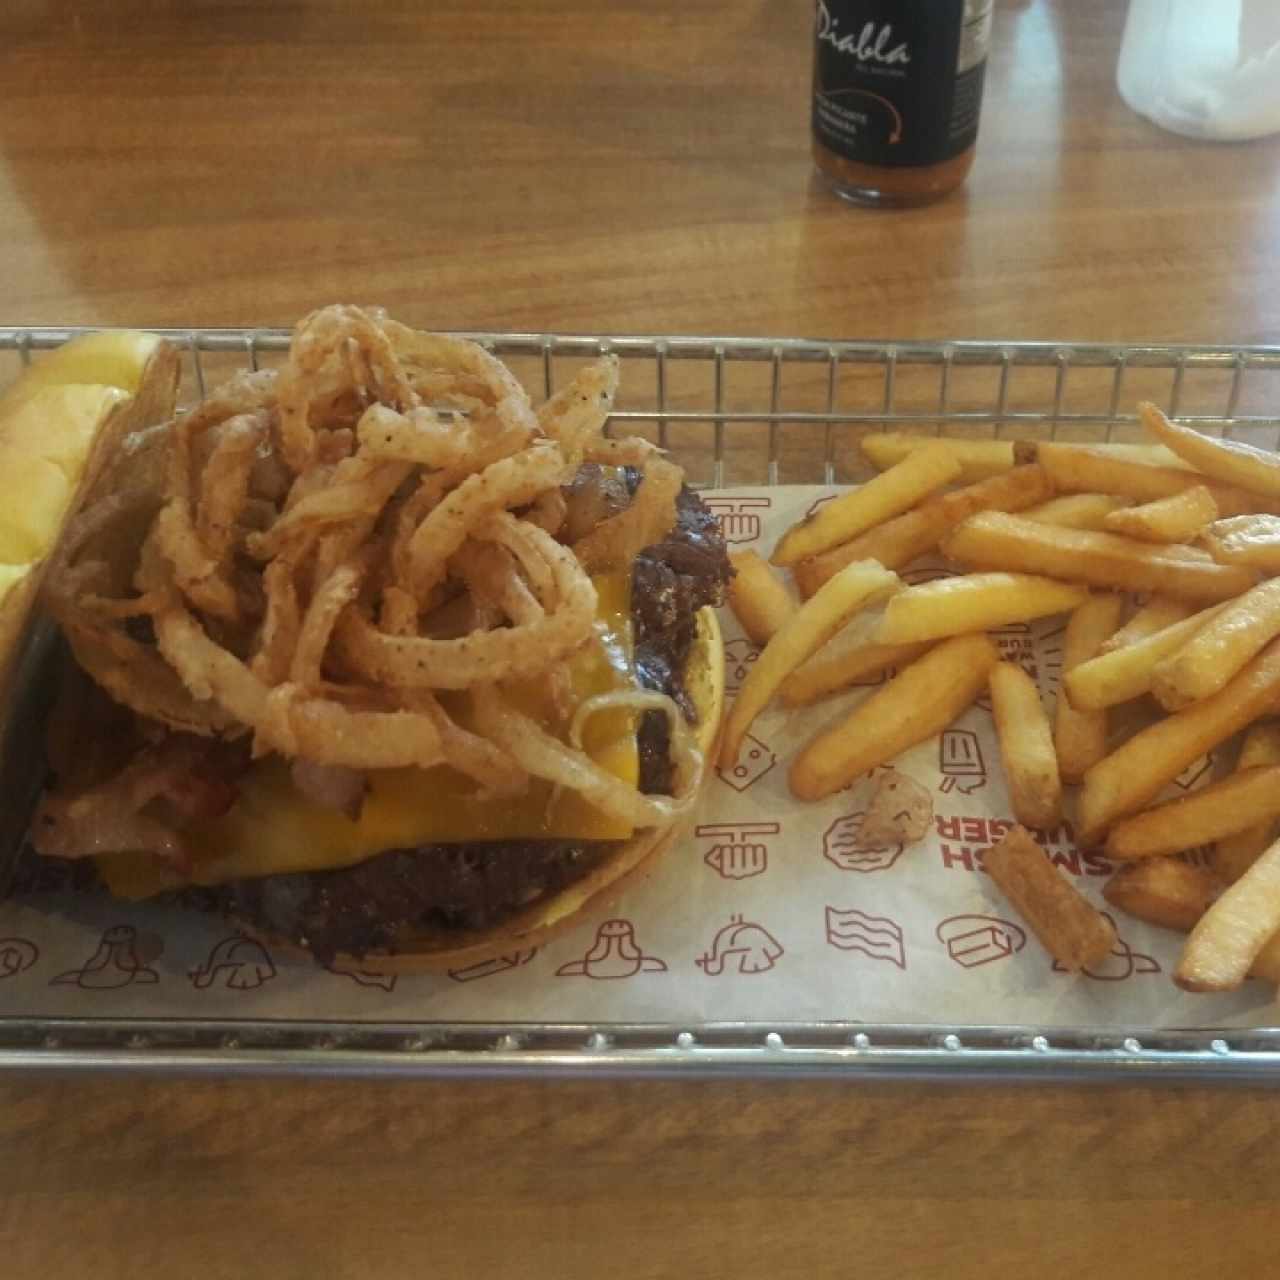 BBQ smash burger